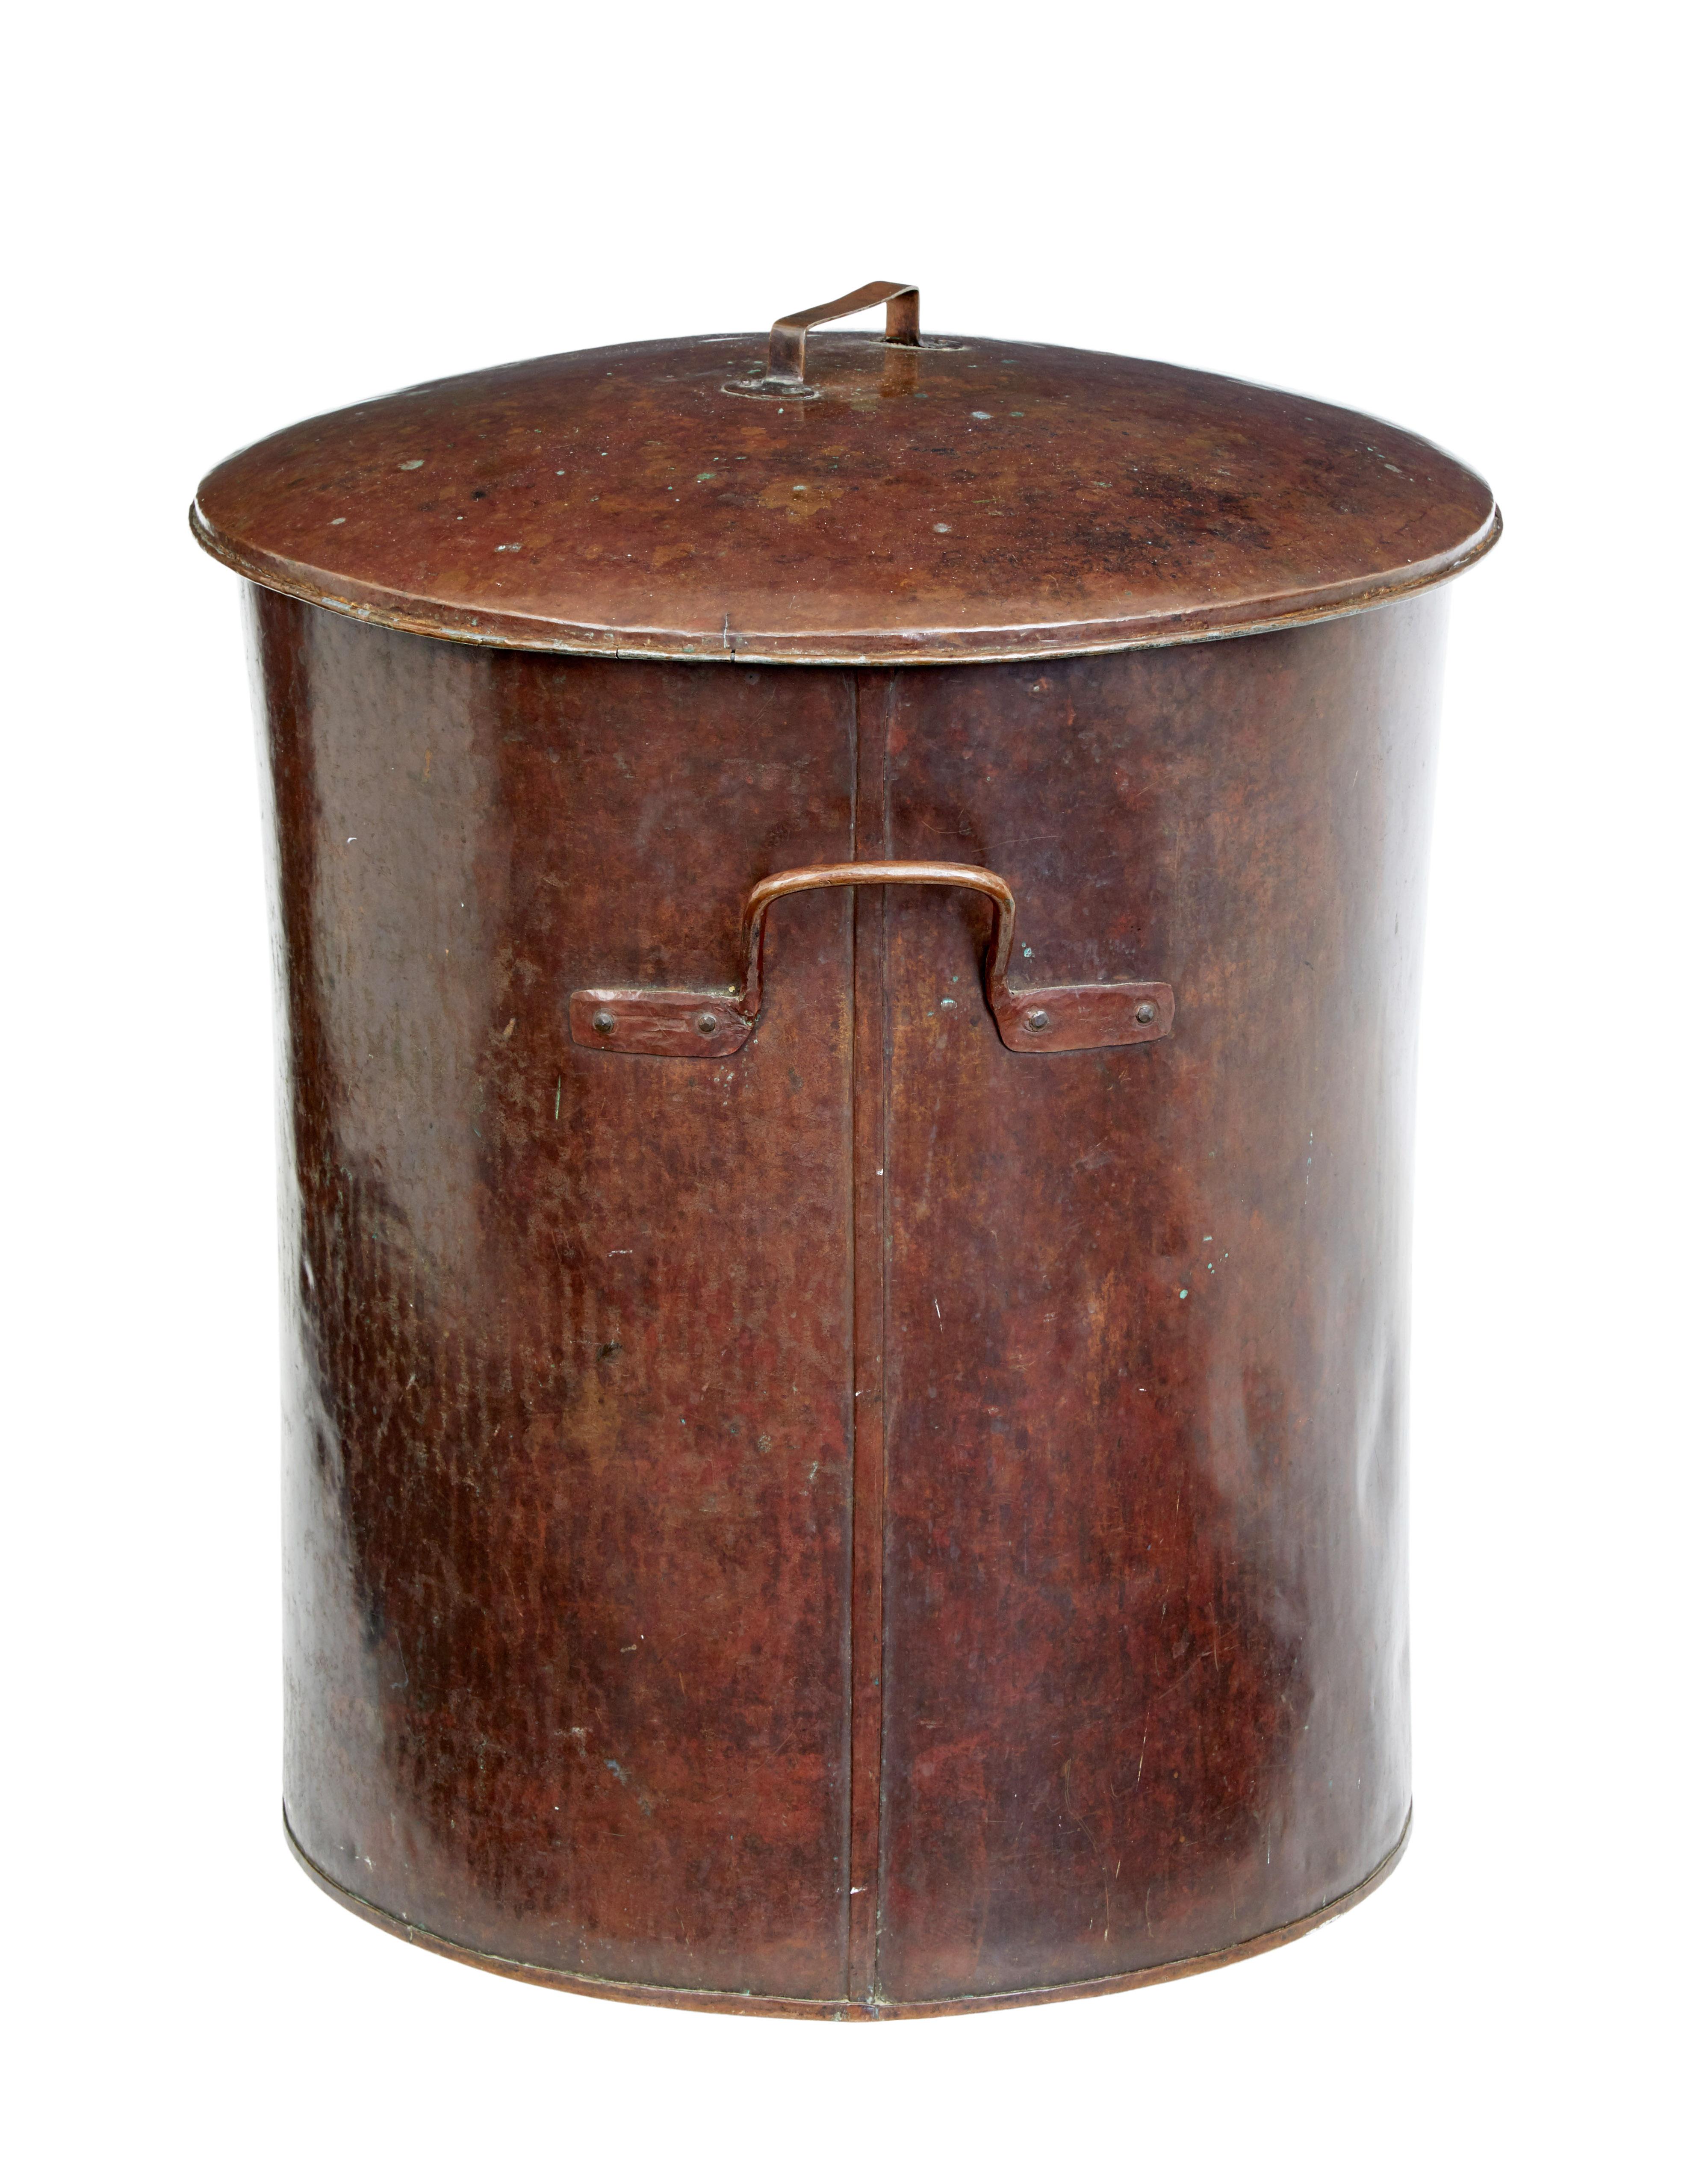 Rustic Large 19th Century Copper Milk Vessel